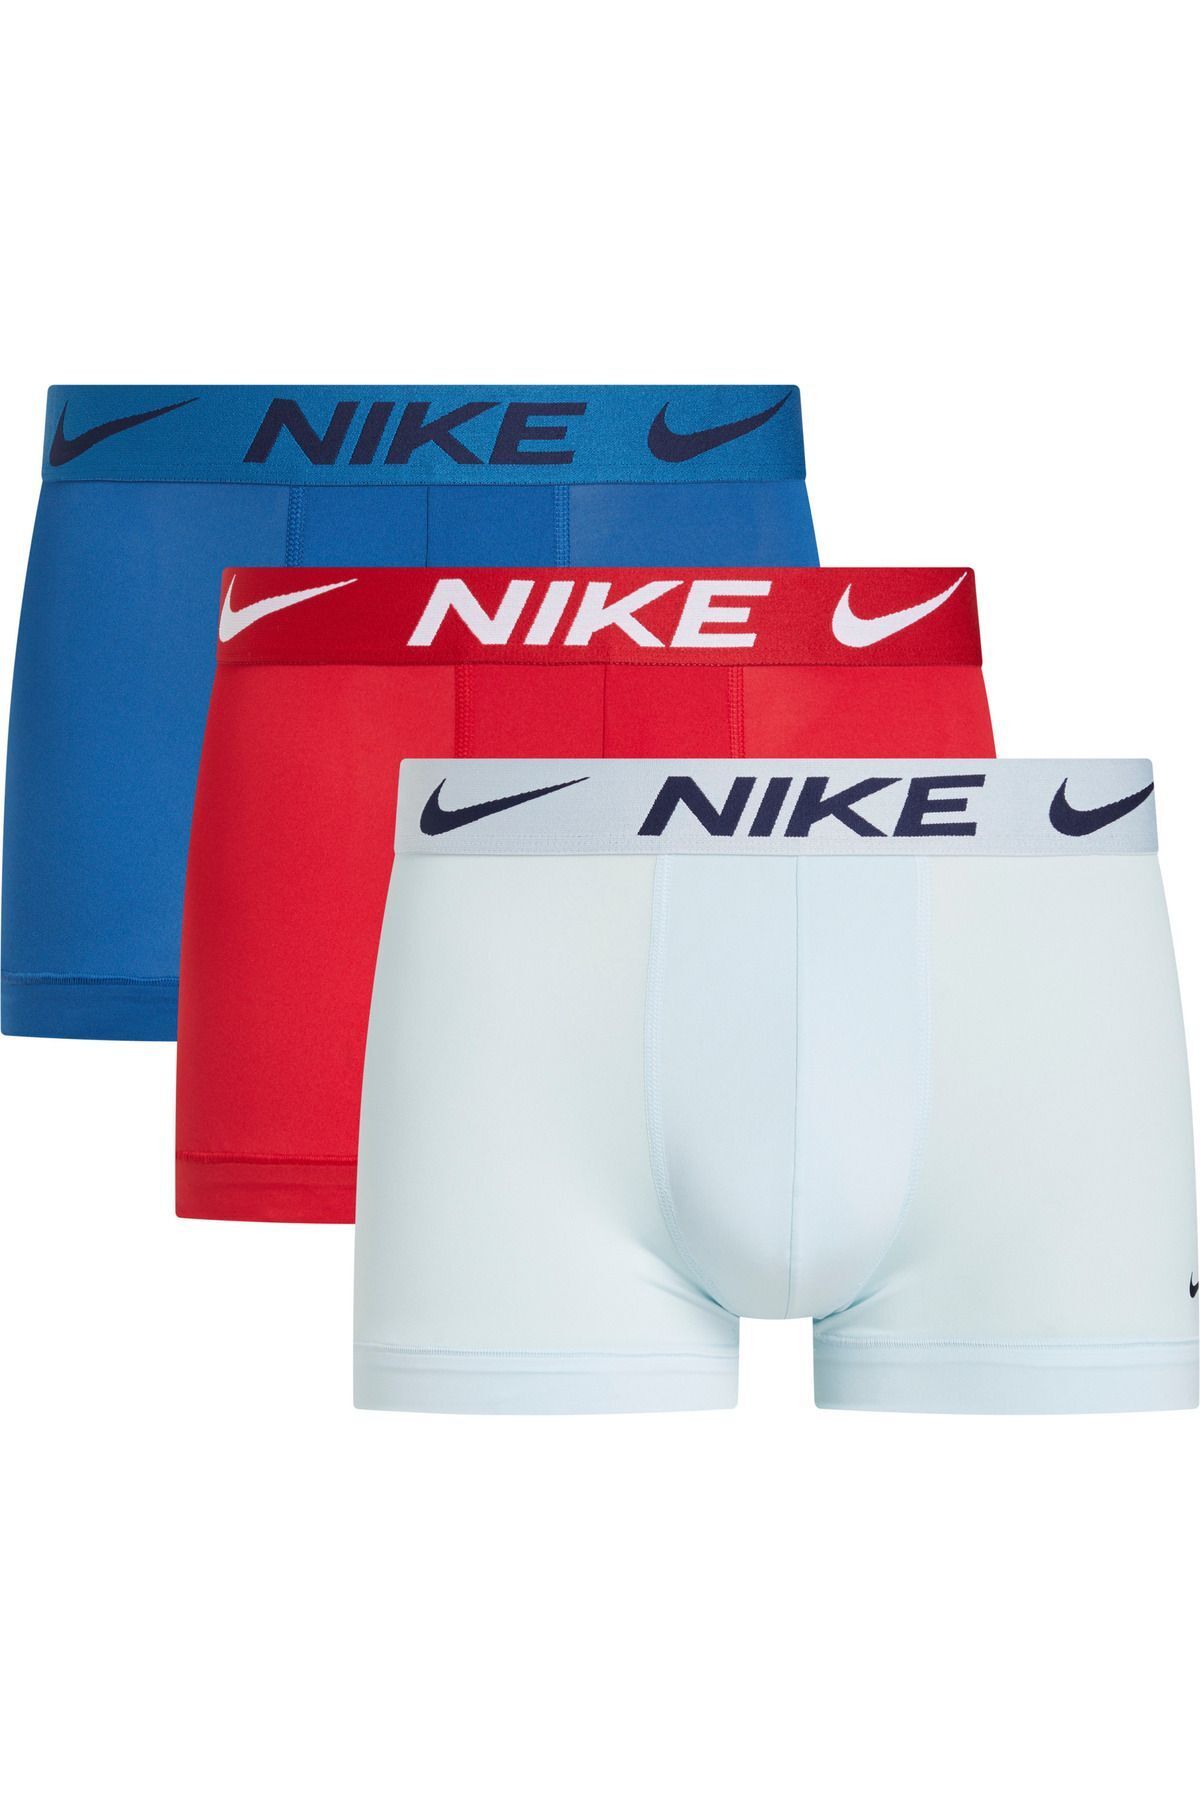 Nike Erkek Marka Logolu Elastik Bantlı Günlük Kullanıma Uygun Kırmızı-Lacivert-Mavi Boxer 0000KE1156-X29